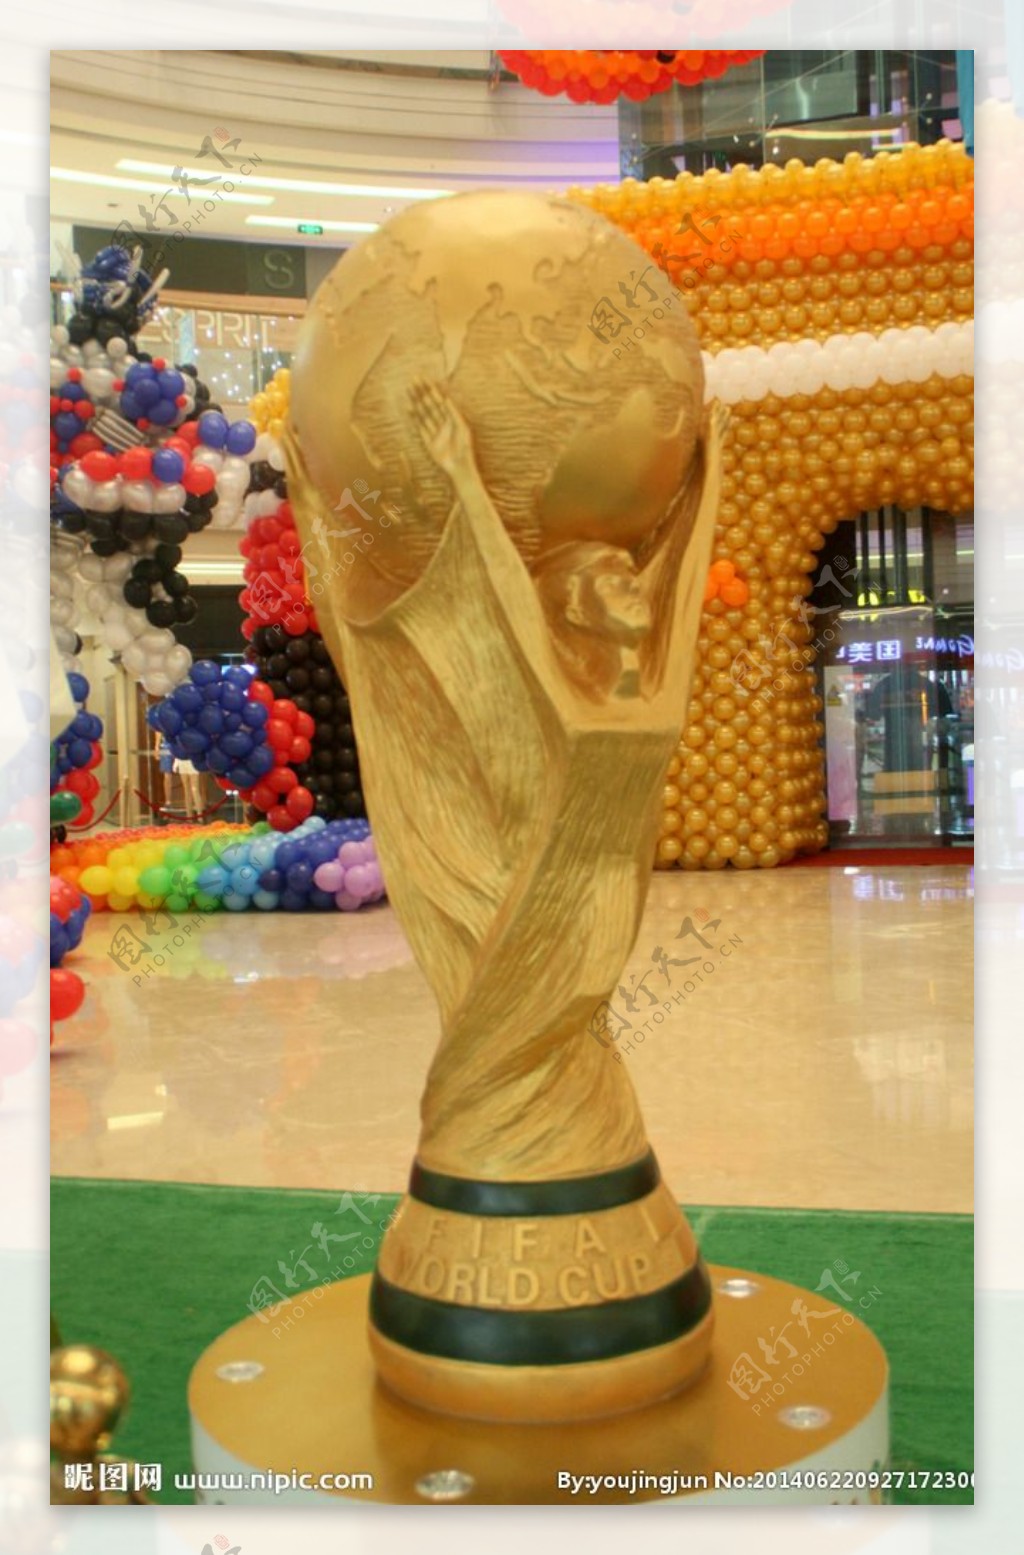 世界杯奖杯图片